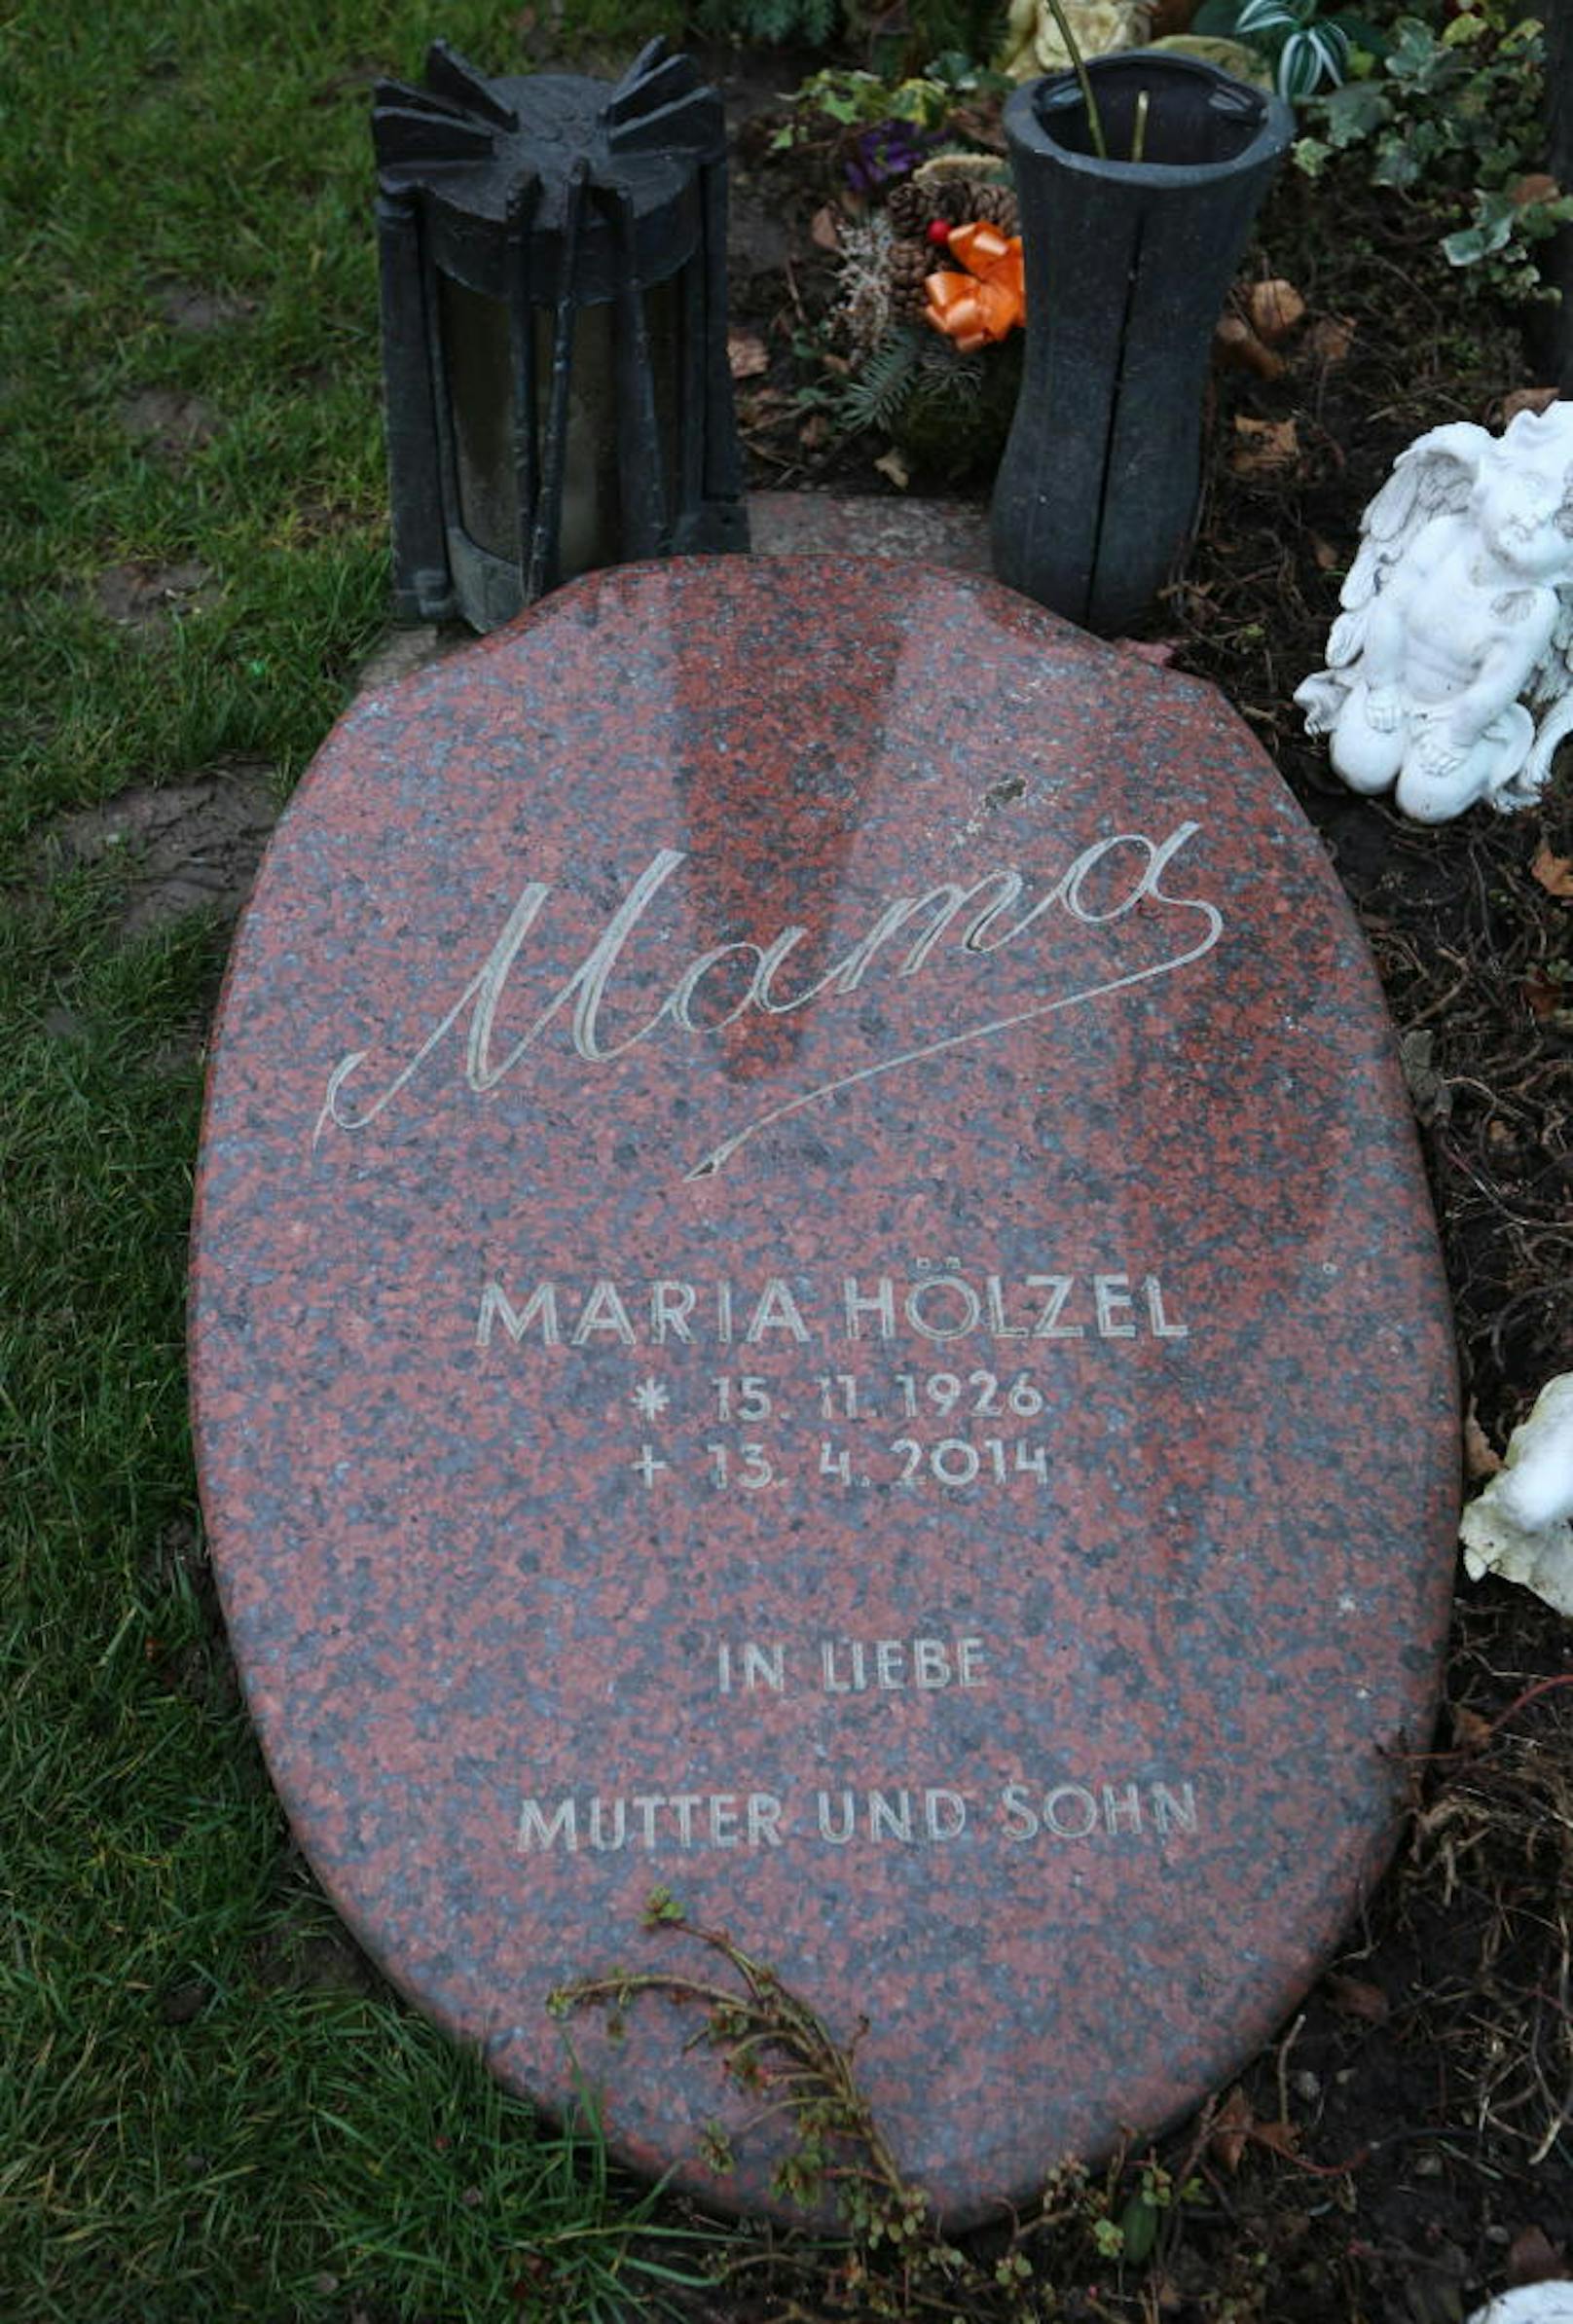 Als Maria Hölzel 2014 starb, wurde sie zu Hansi ins Ehrengrab am Zentralfriedhof gelegt Fotocredit: Conny de Beauclair